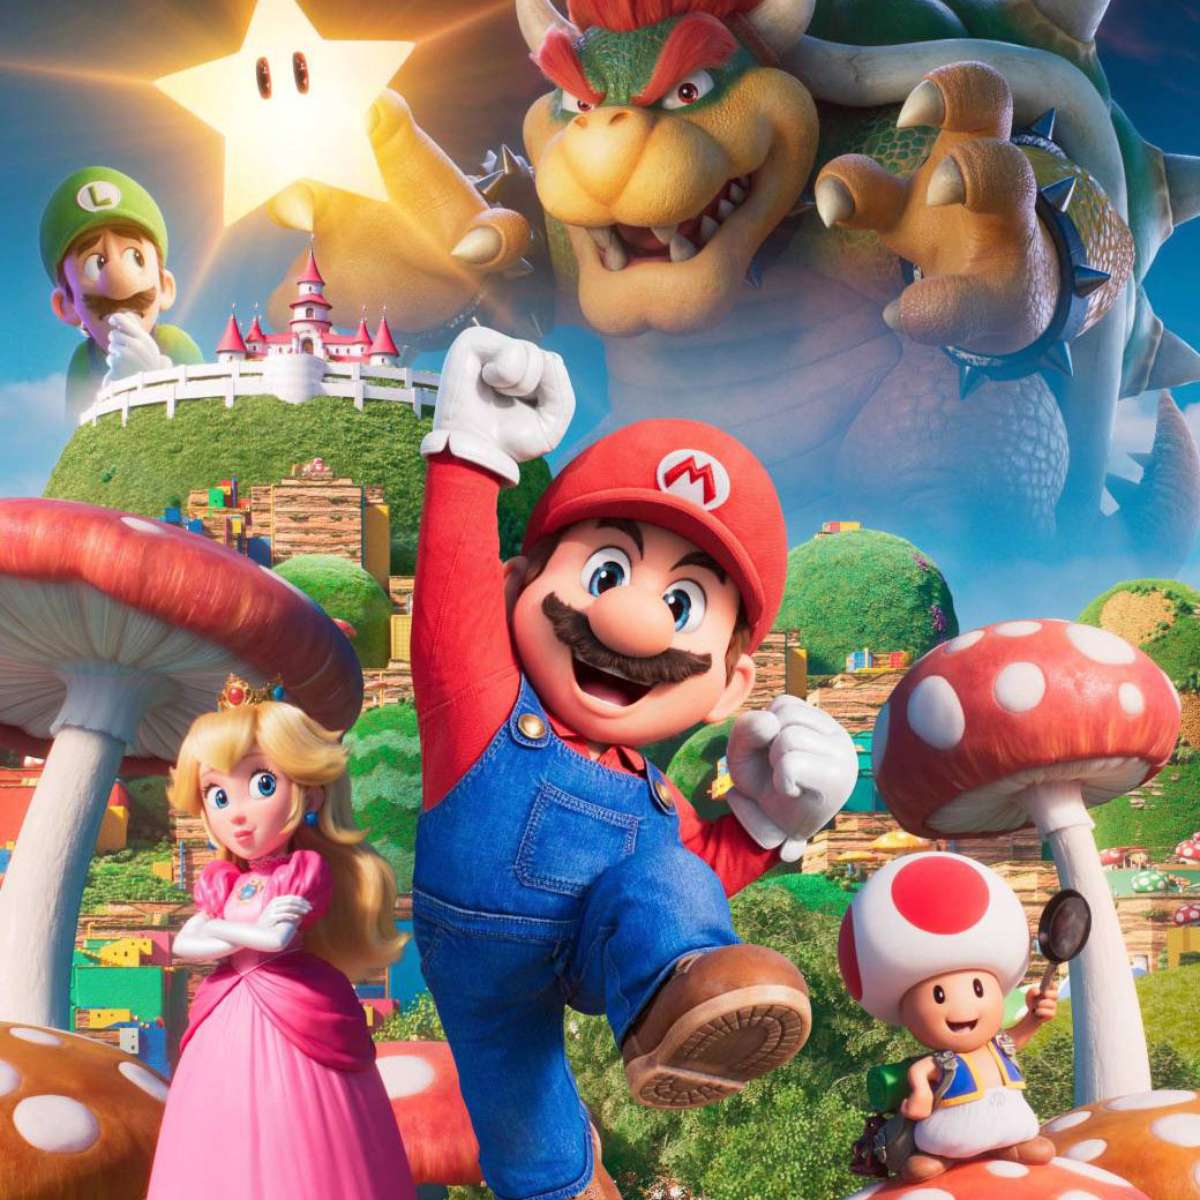 Atualizado] Super Mario Bros.: O Filme tem lançamento adiantado